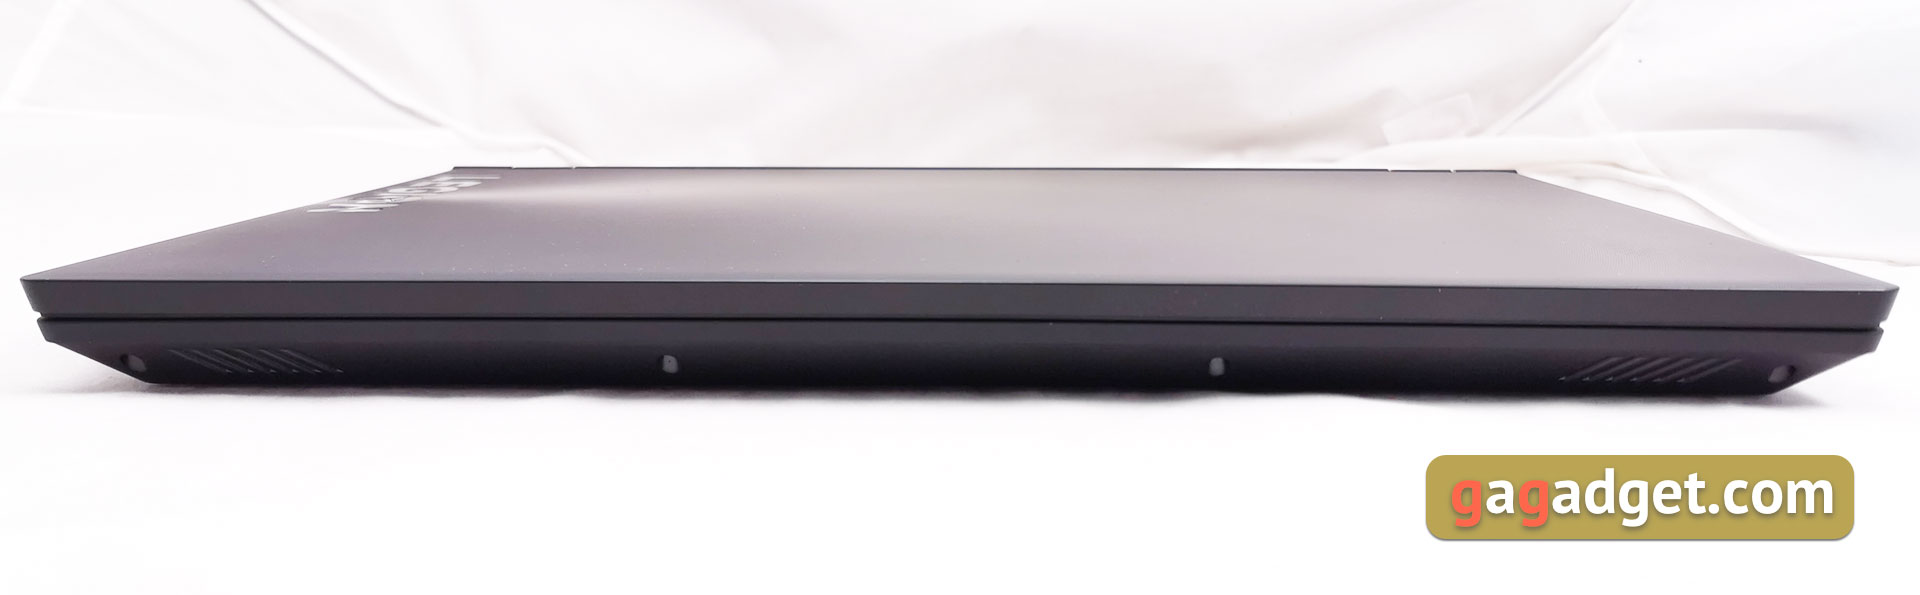 Огляд Lenovo Legion Y530: ігровий ноутбук із суворим дизайном-11